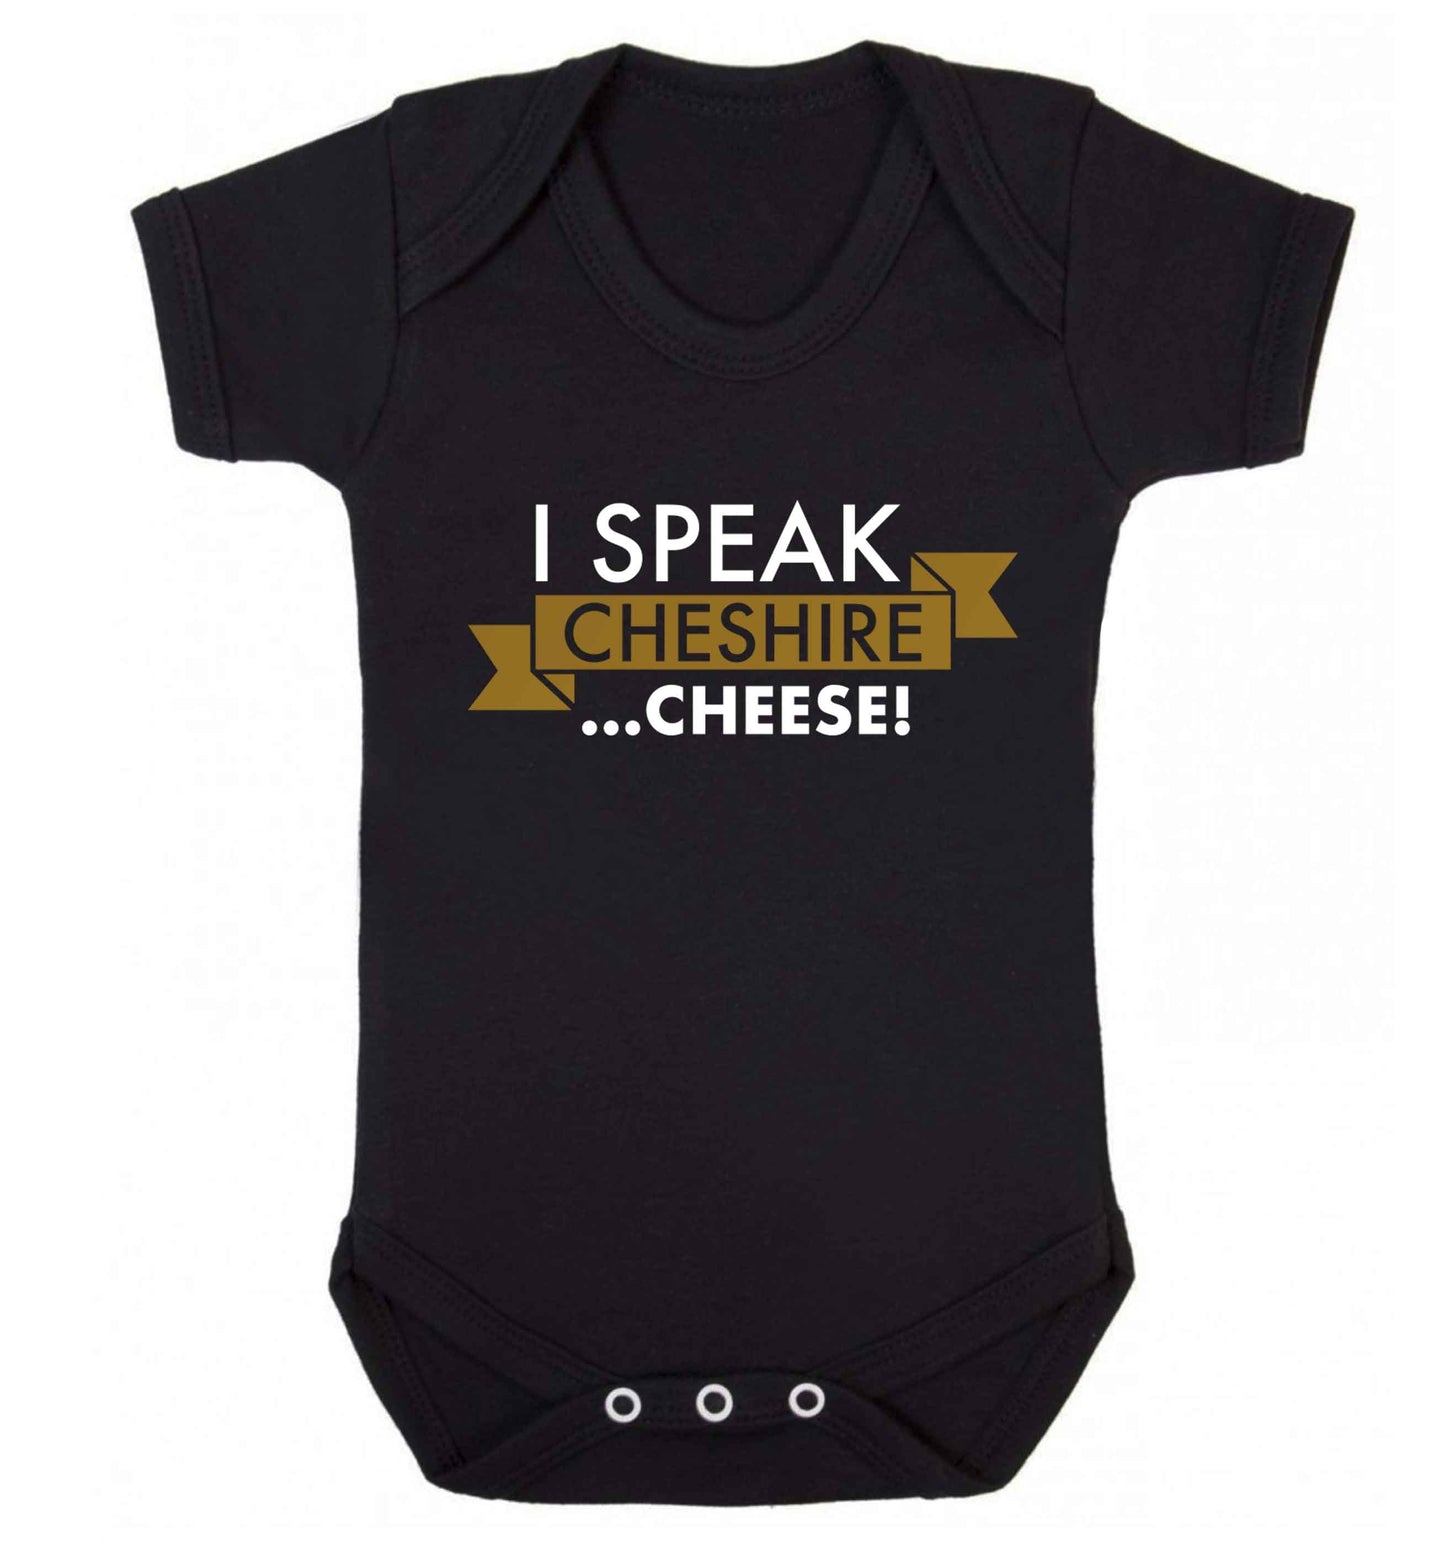 I speak Cheshire cheese Baby Vest black 18-24 months